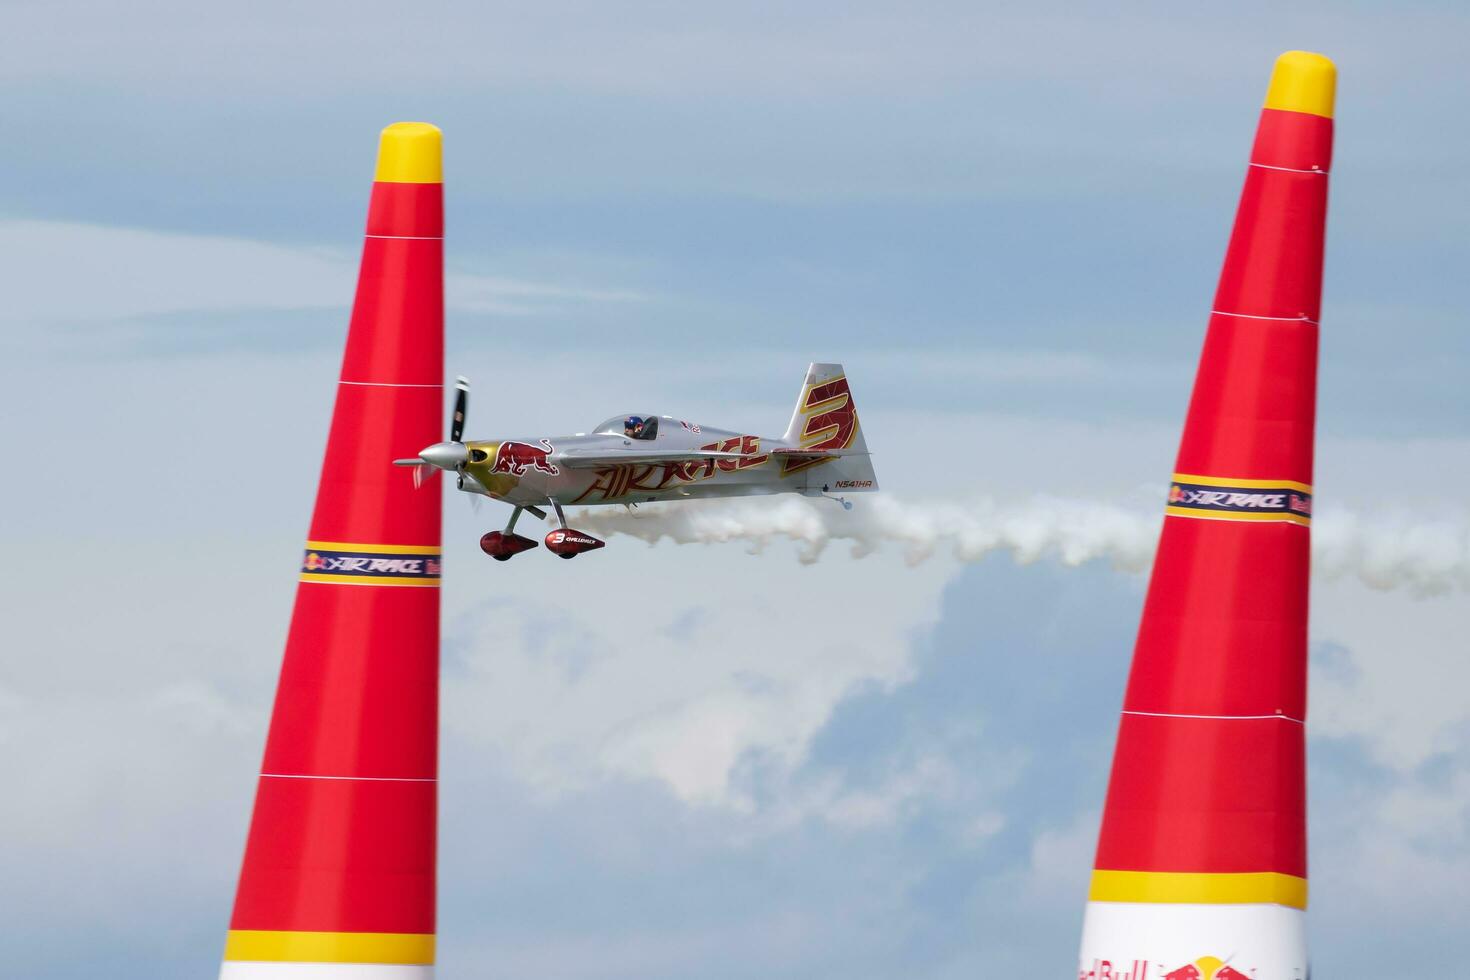 röd tjur luft lopp 2019 utmanare klass zivko kant 540 flygplan över sjö balaton på zamardi stad foto